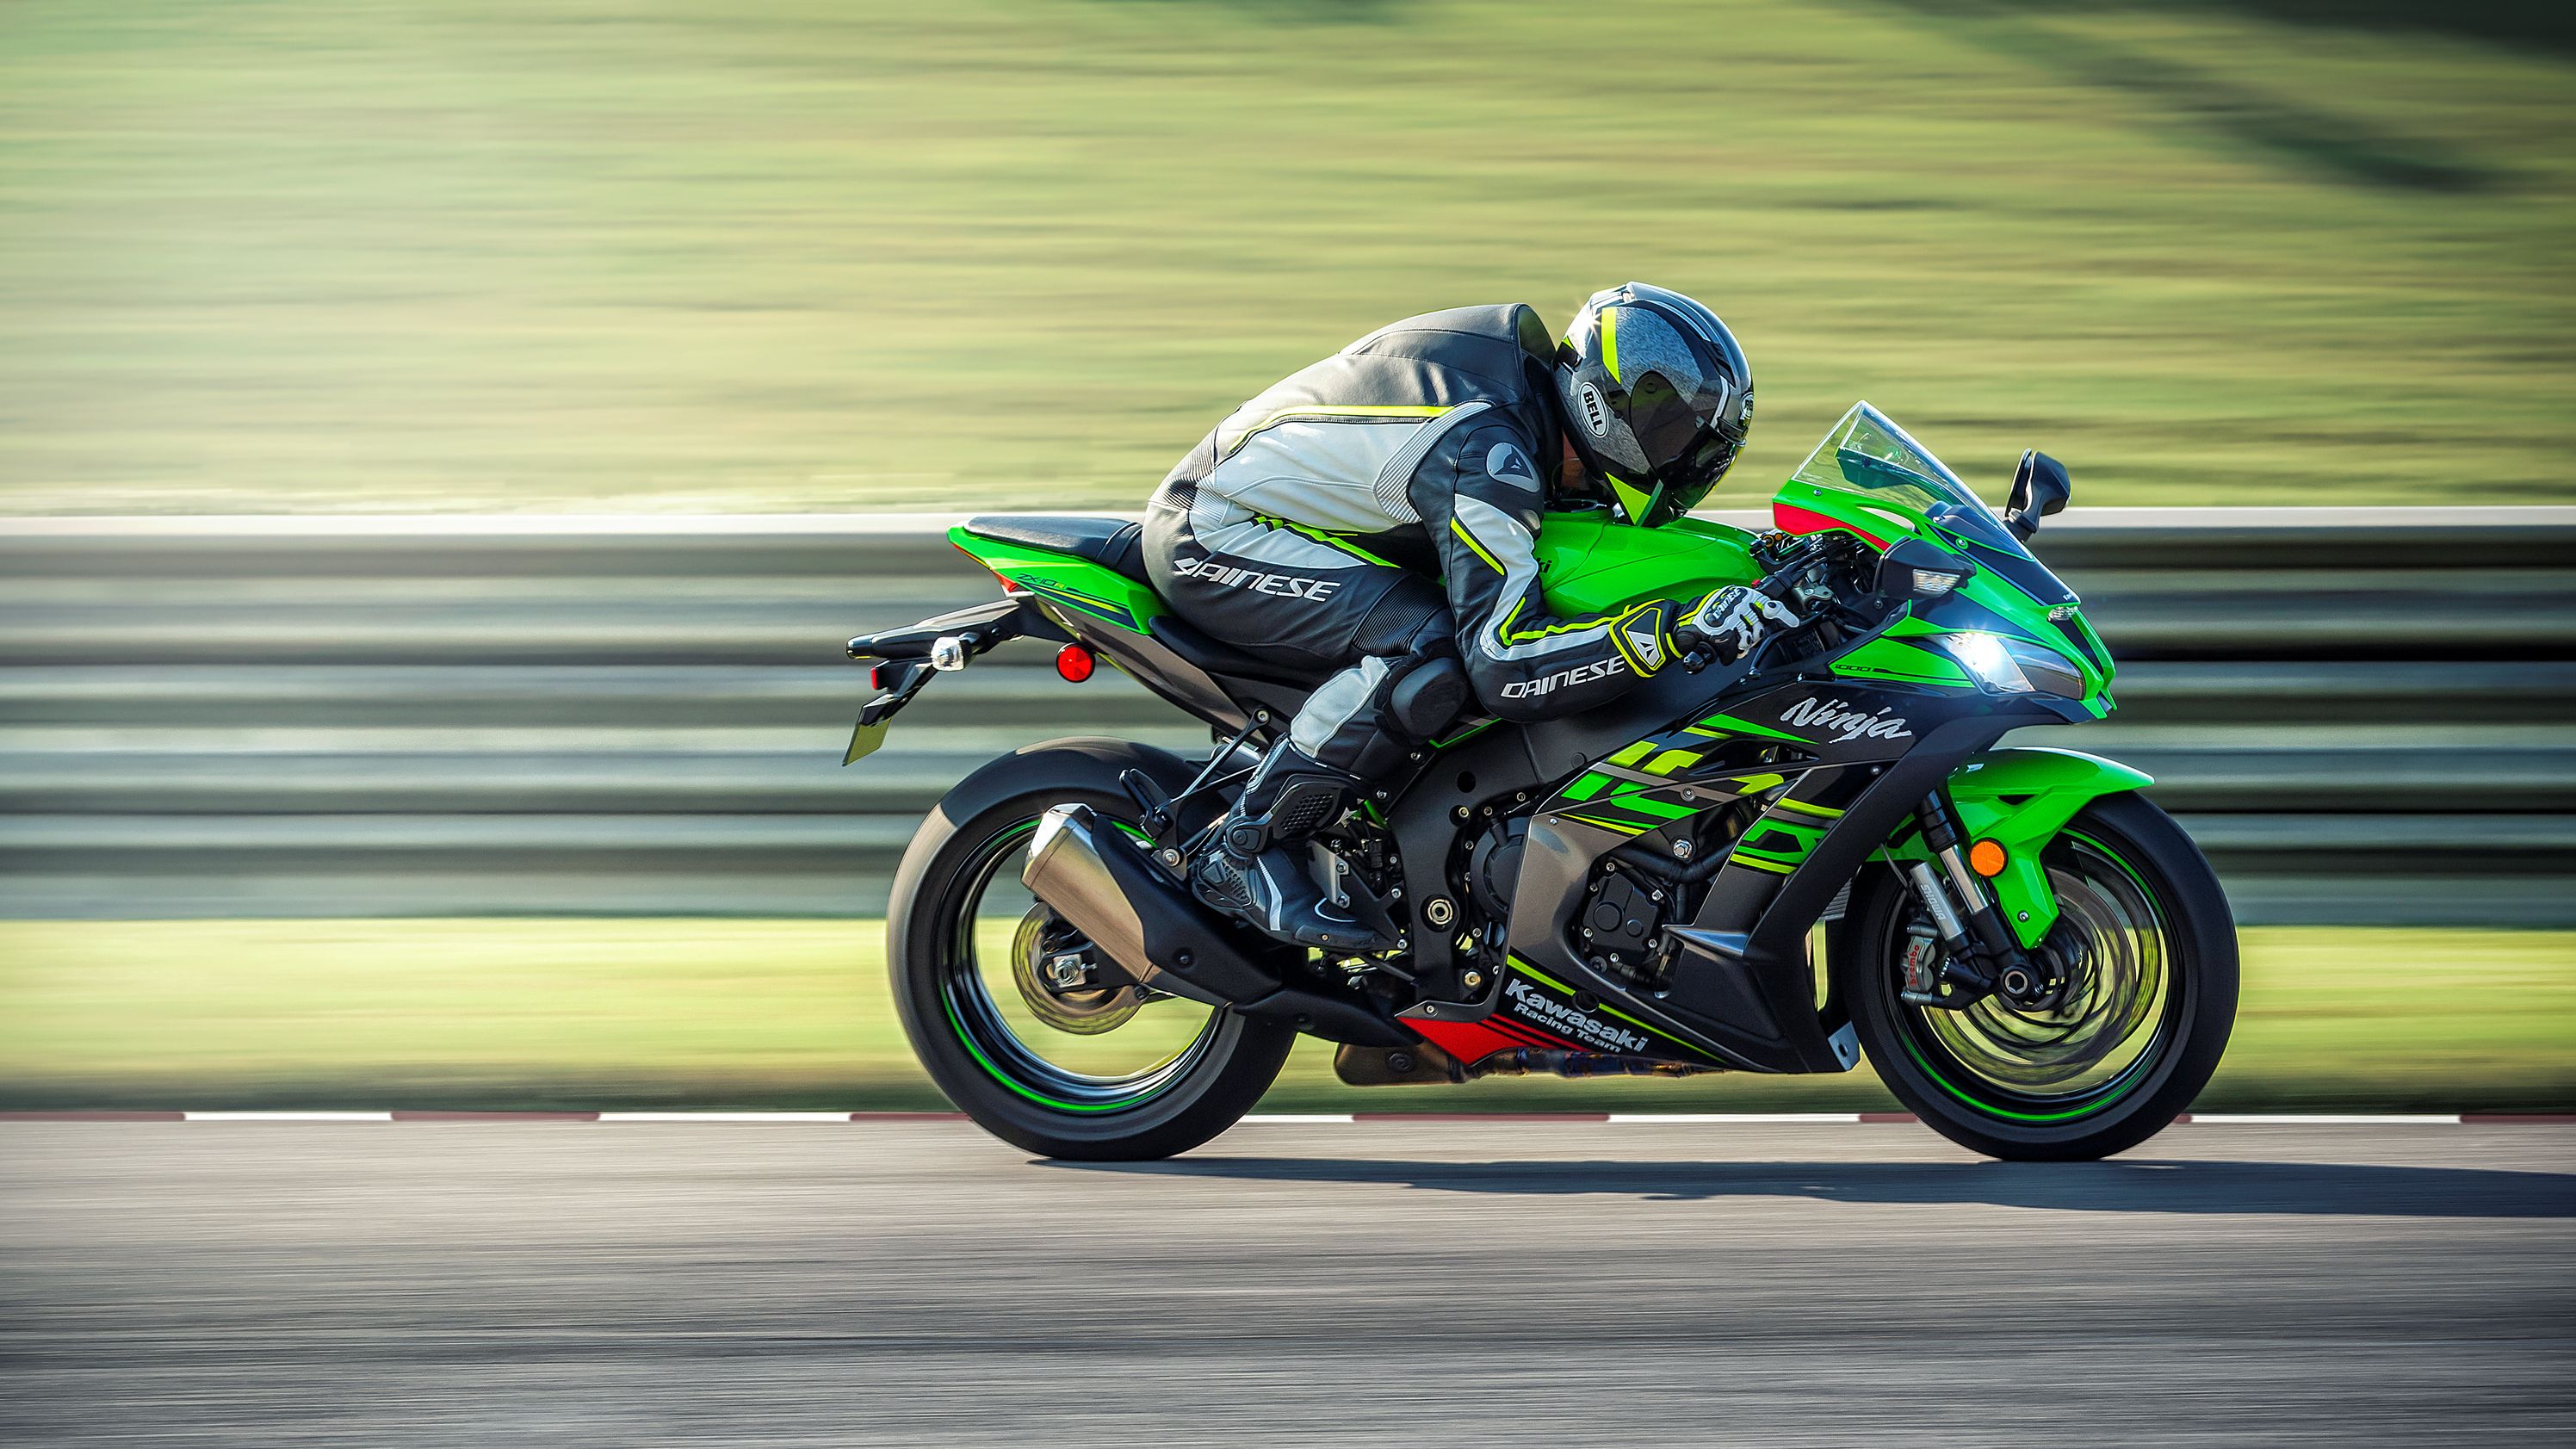 2019 Kawasaki Ninja ZX-10R racing by on-track